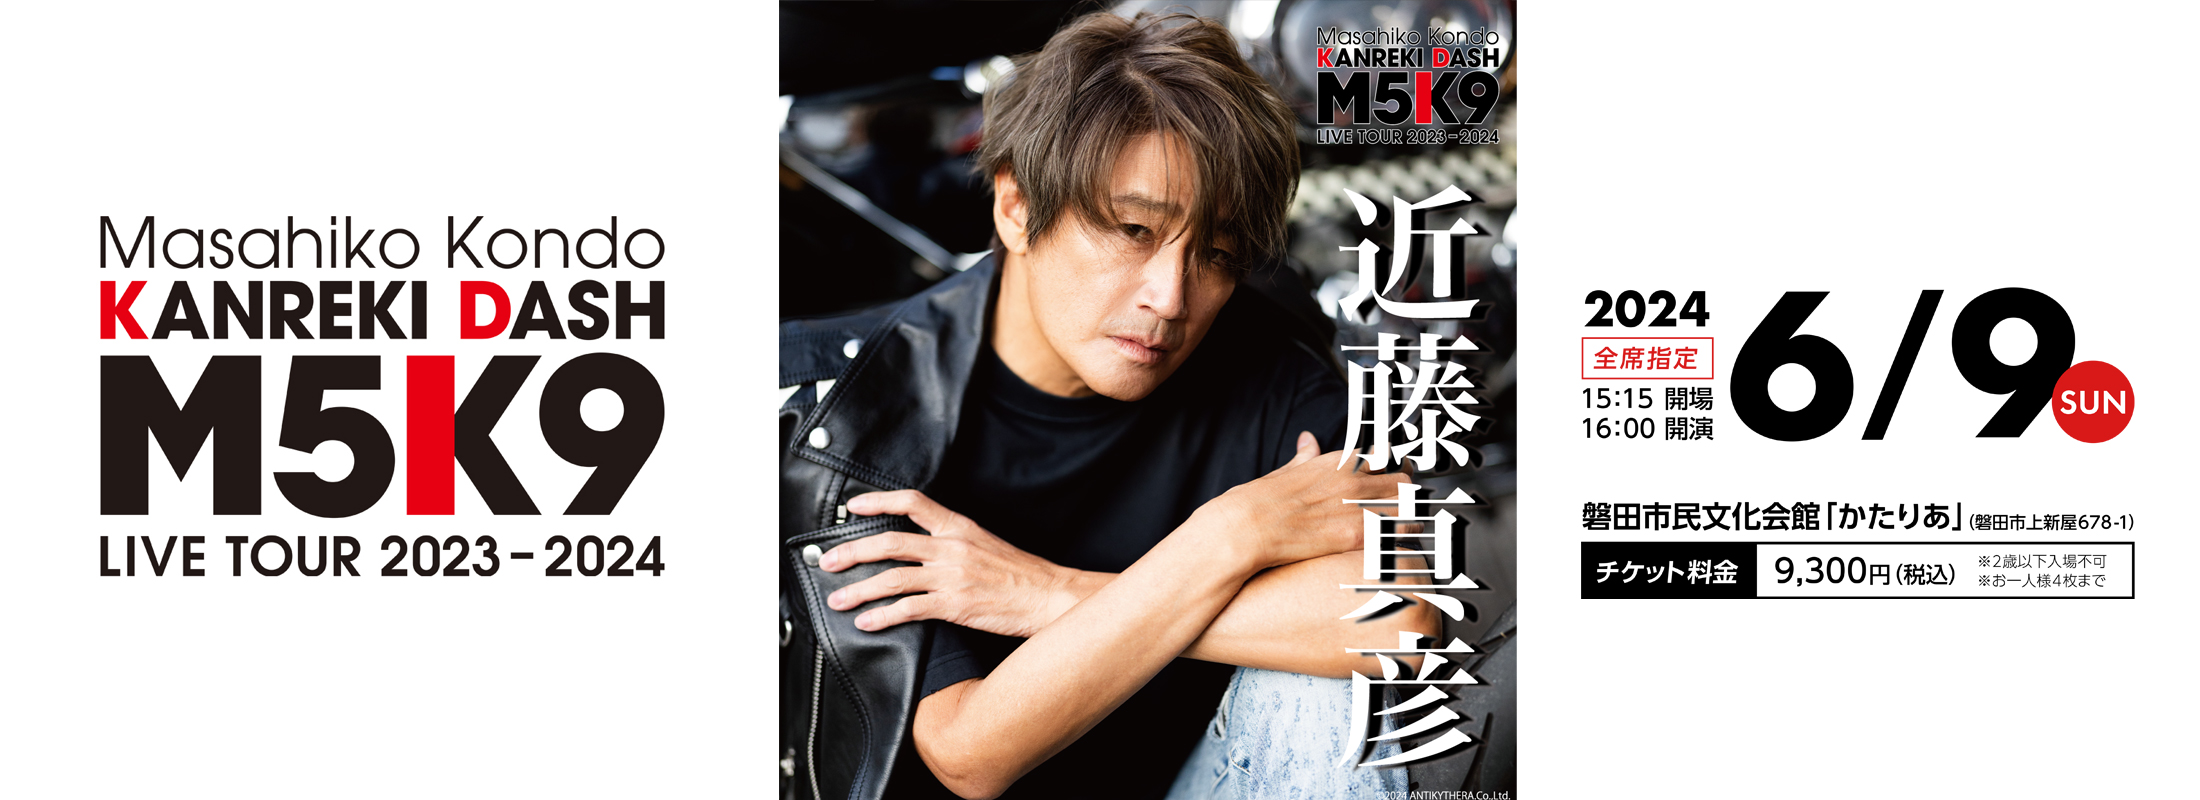 Masahiko Kondo KANREKI DASH「M5K9」LIVE TOUR 2023-2024